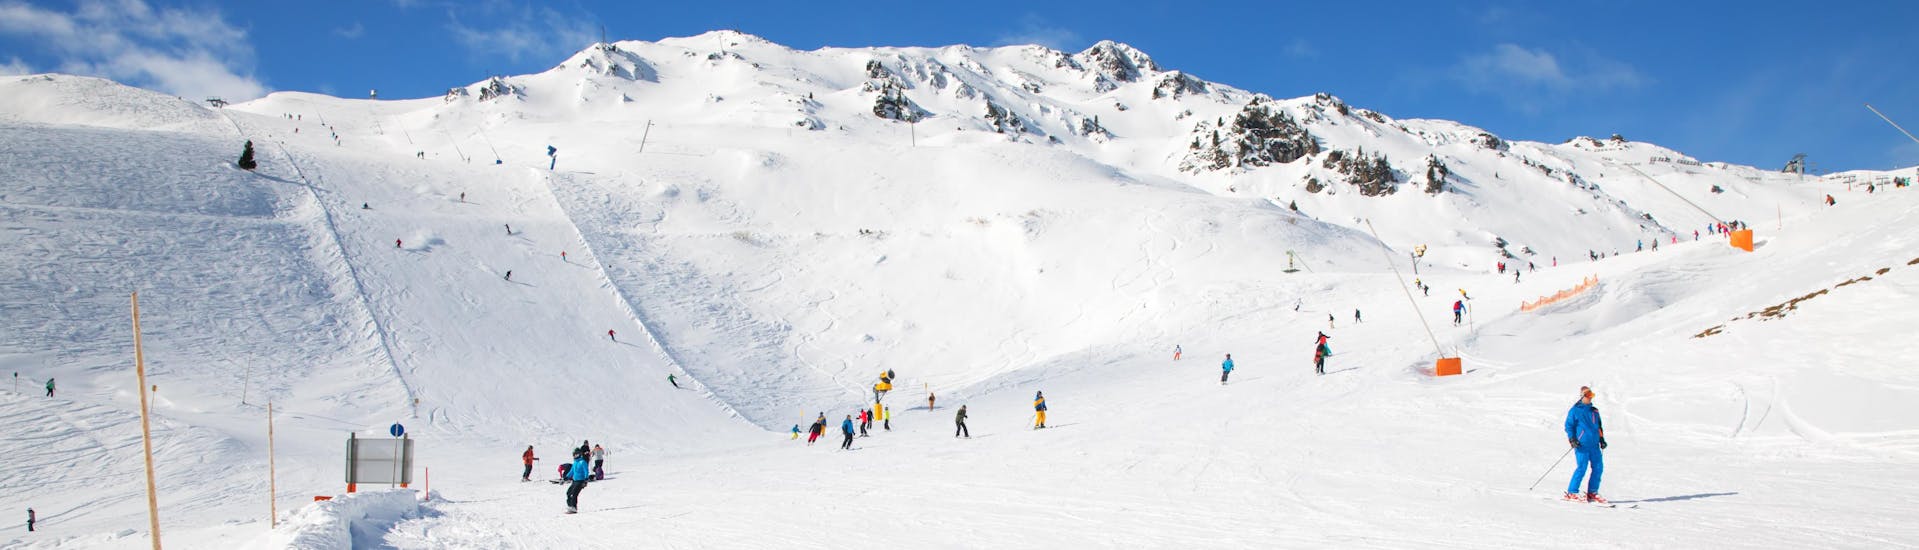 Ausblick auf die sonnige Berglandschaft beim Skifahren lernen mit den Skischulen in Hochfügen.